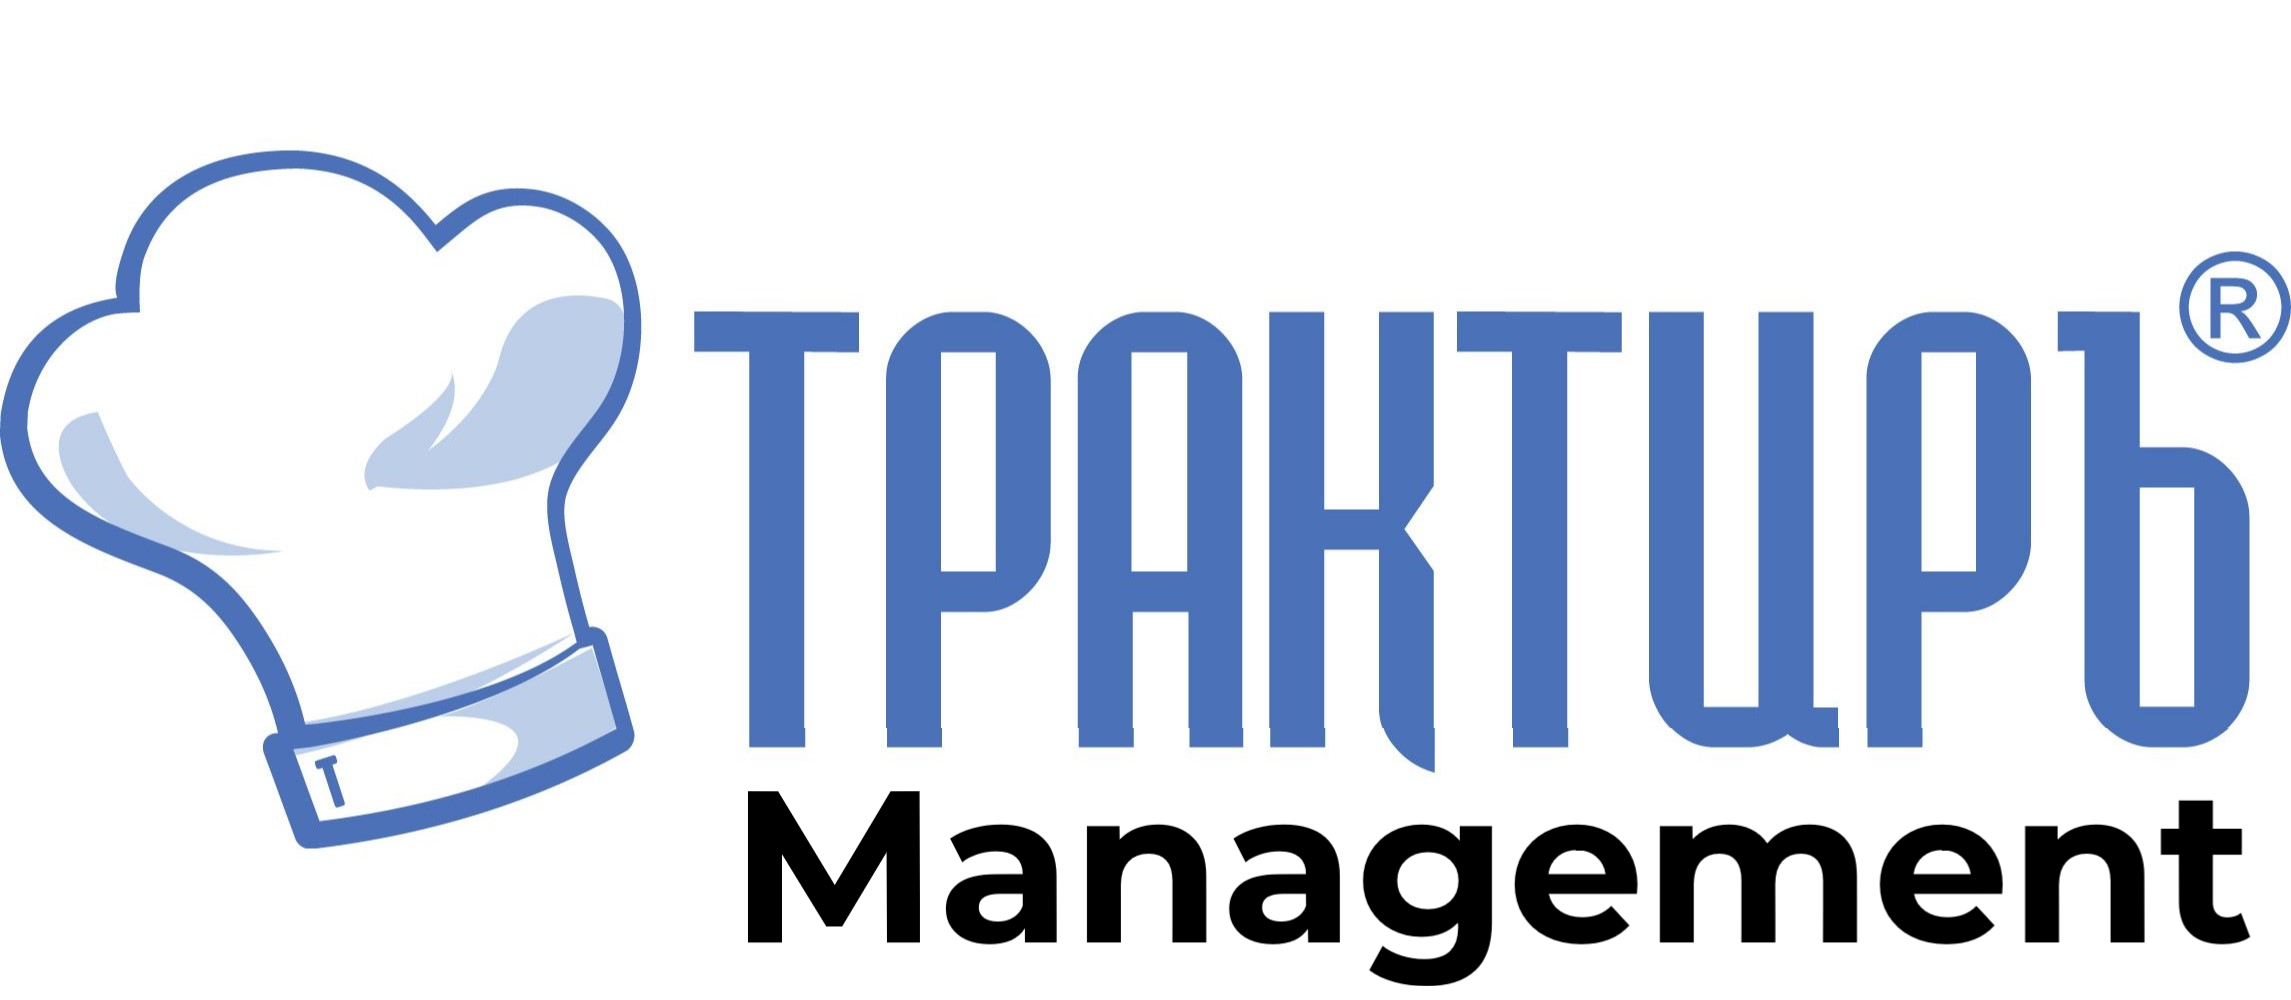 Трактиръ: Management в Йошкар-Оле